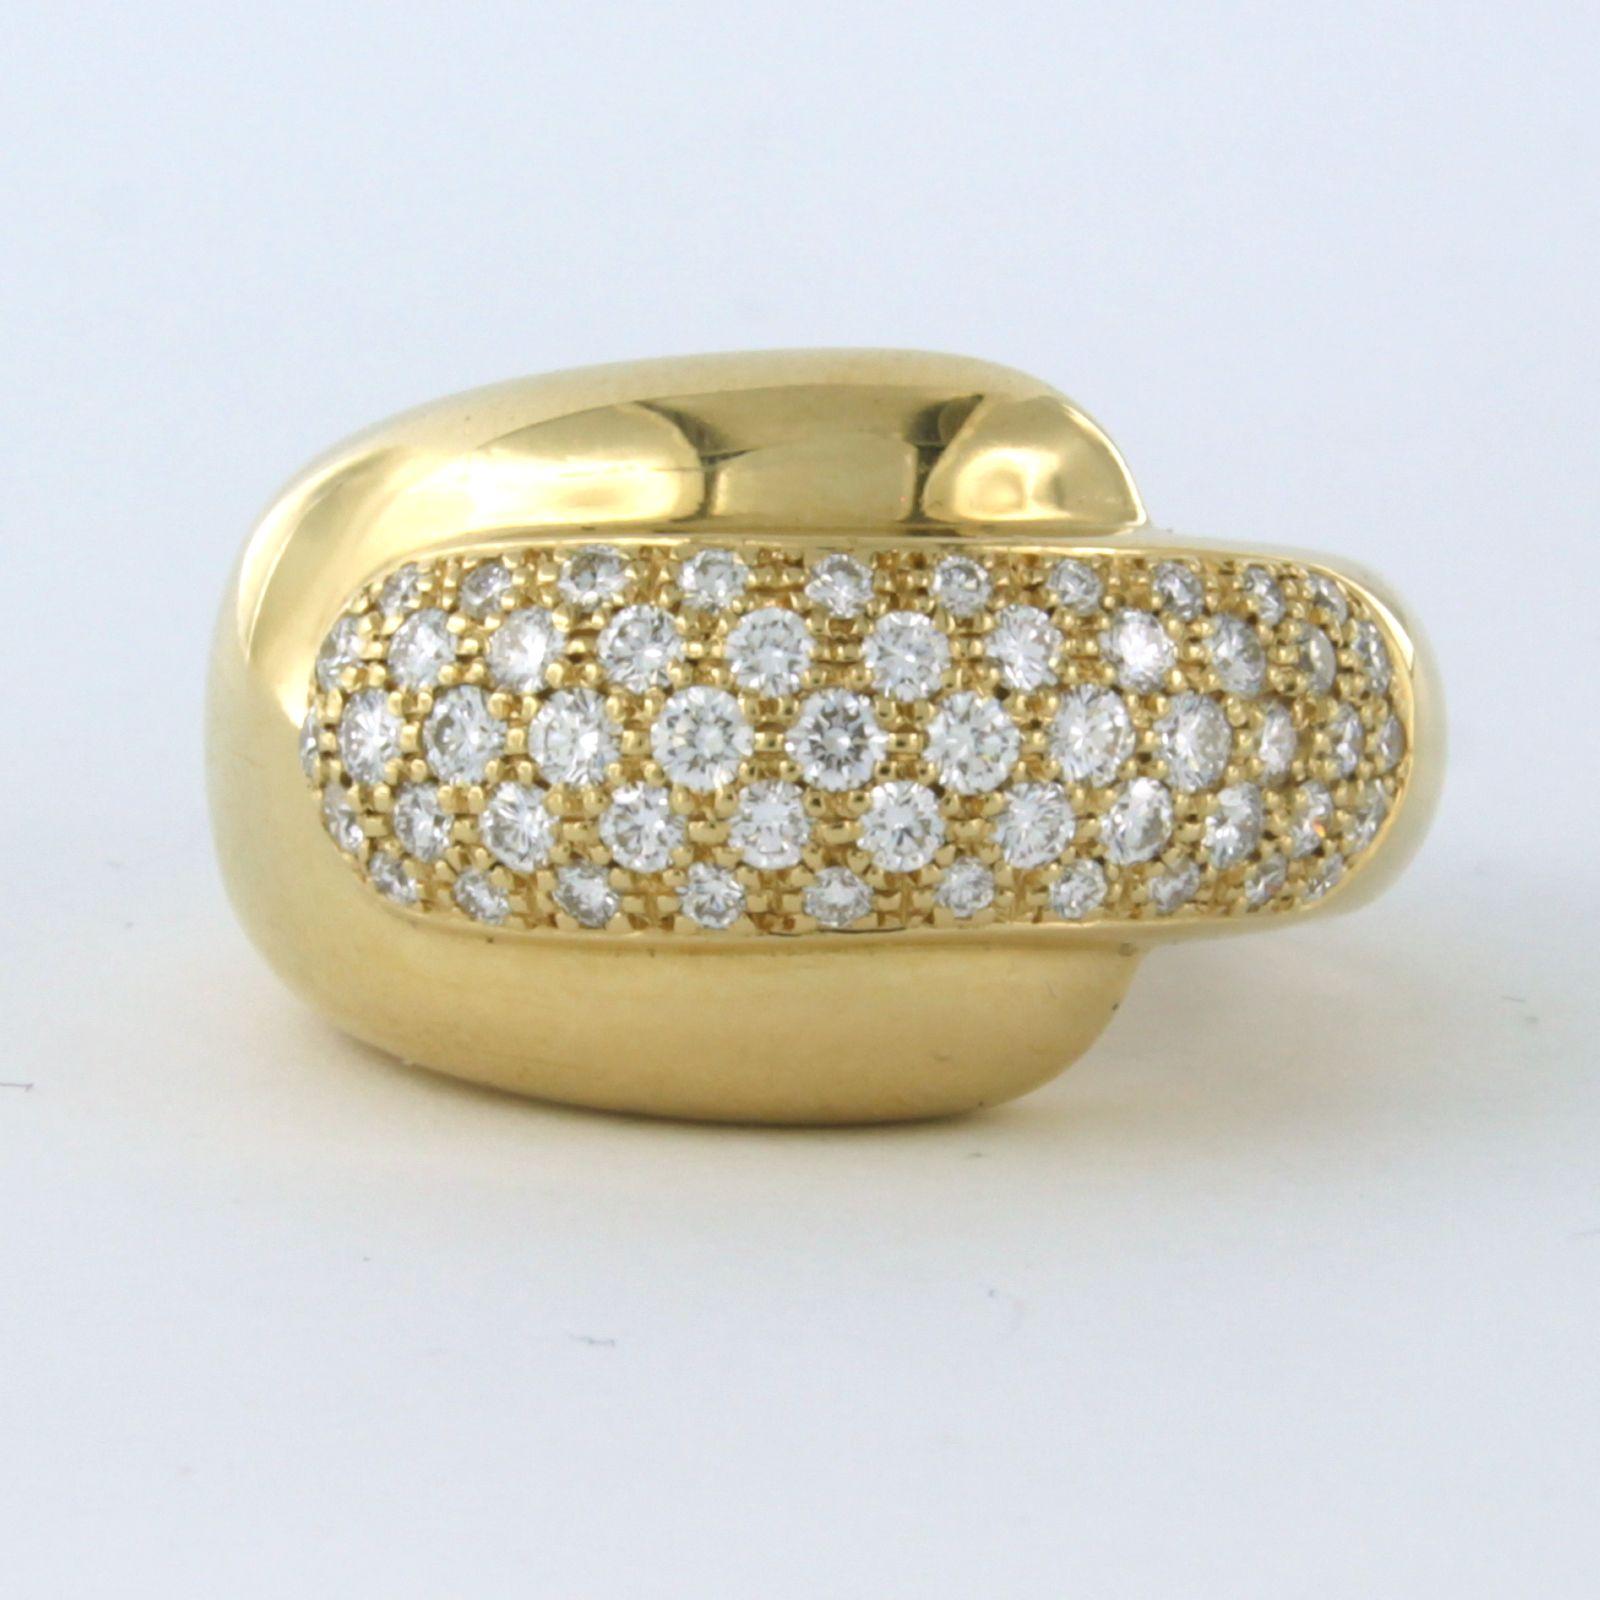 Chaumet Paris Ring aus 18 Karat Gelbgold, besetzt mit Diamanten im Brillantschliff bis zu . 1,70ct - F - VS - Ringgröße U.S. 7 - EU 17.25(54)

detaillierte Beschreibung:

die Oberseite des Rings ist 1.5 cm breit

Gewicht 16.3 Gramm

Ringgröße U.S. 7